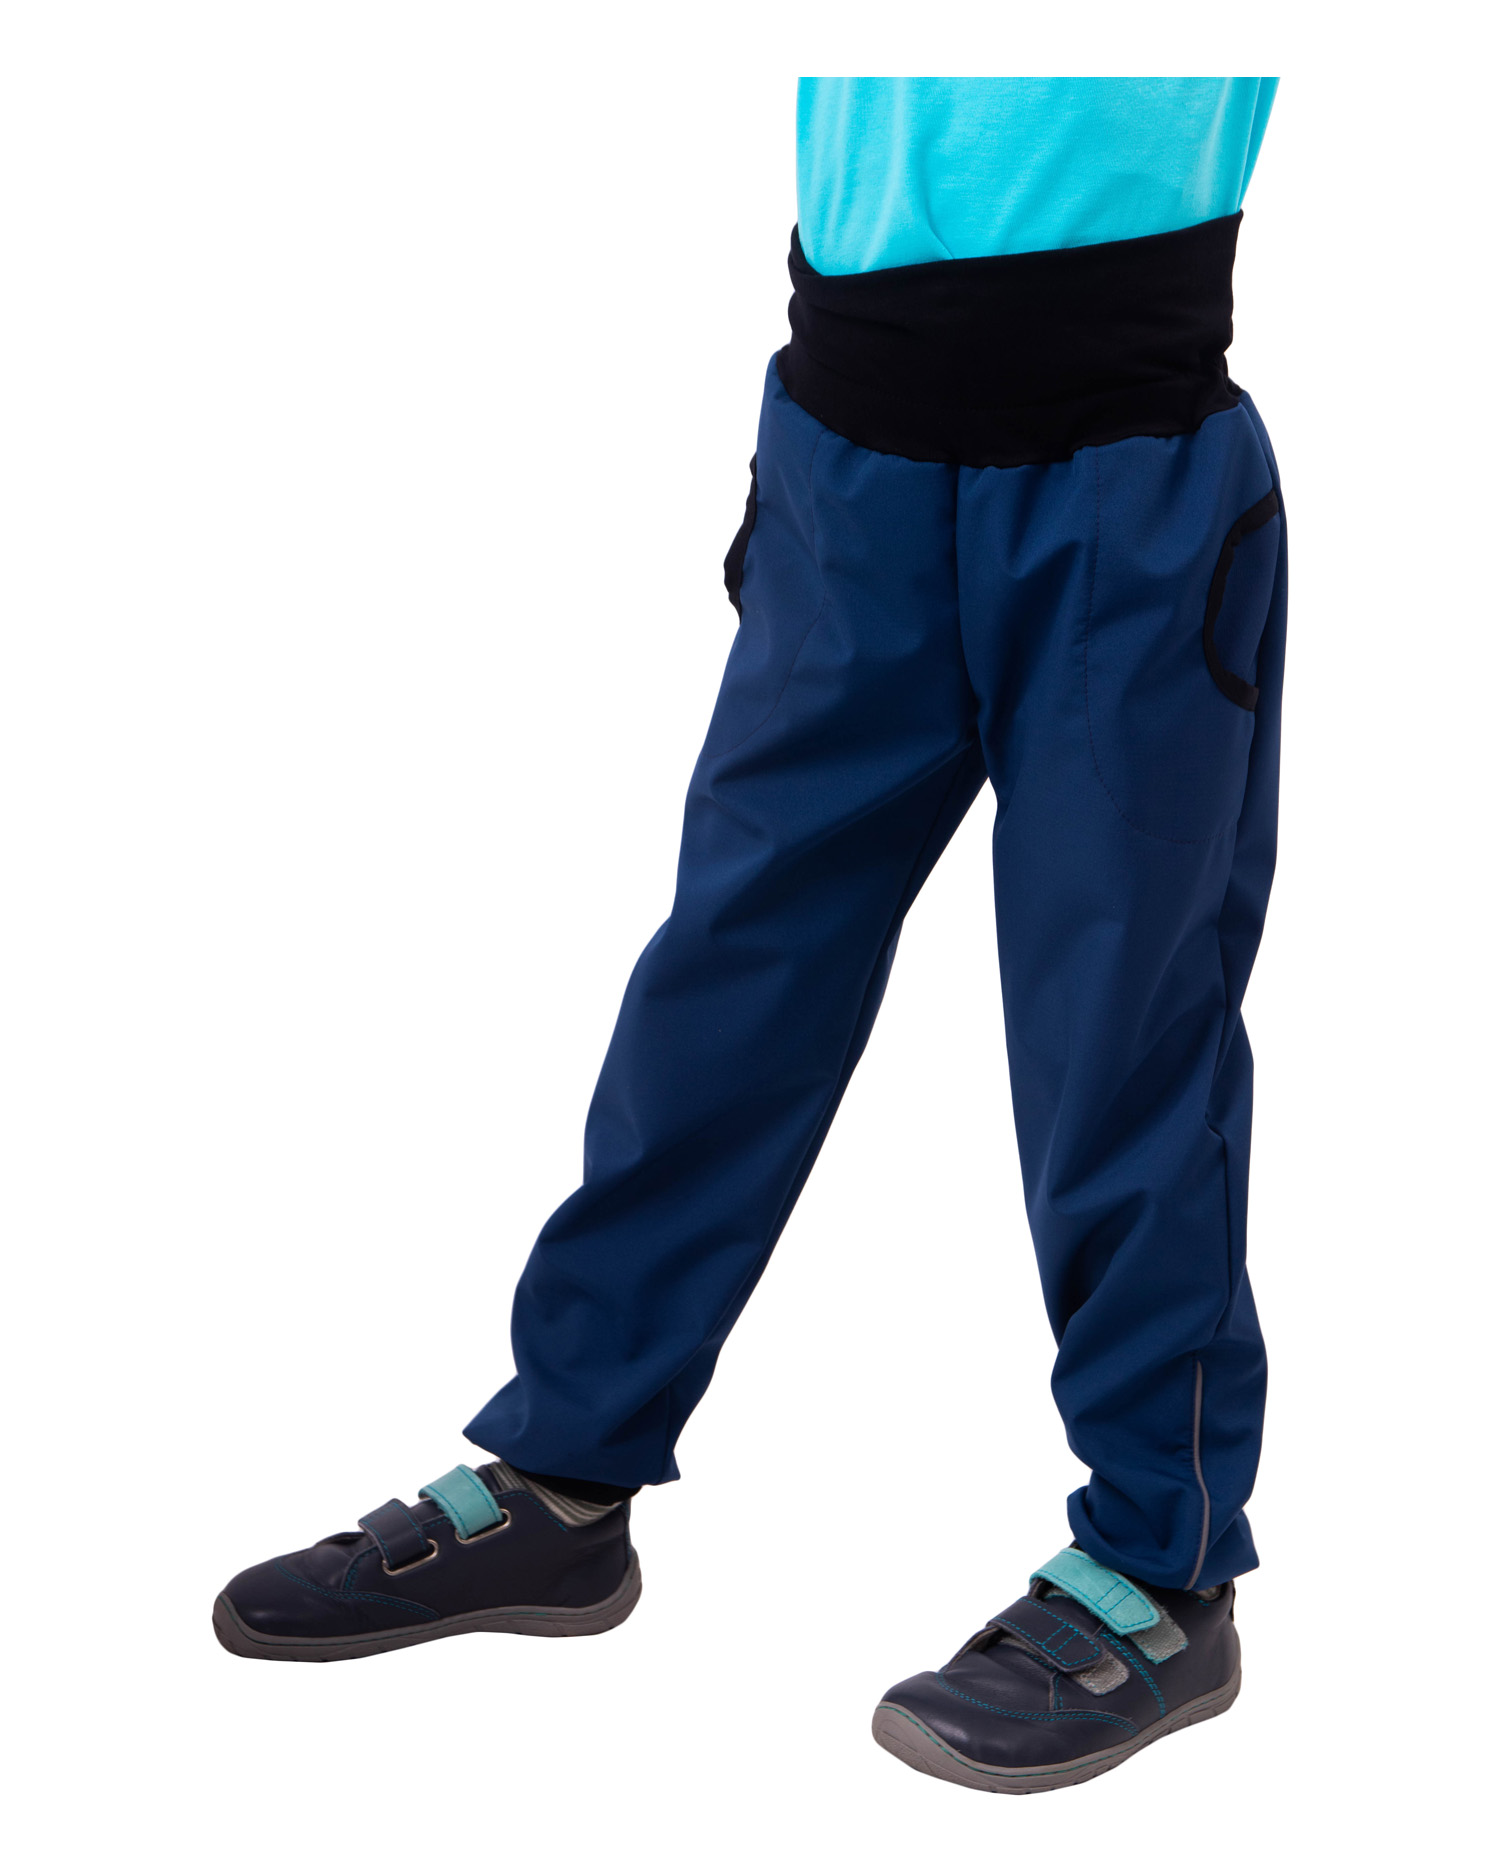 Jarné / letné detské softshellové nohavice, modré